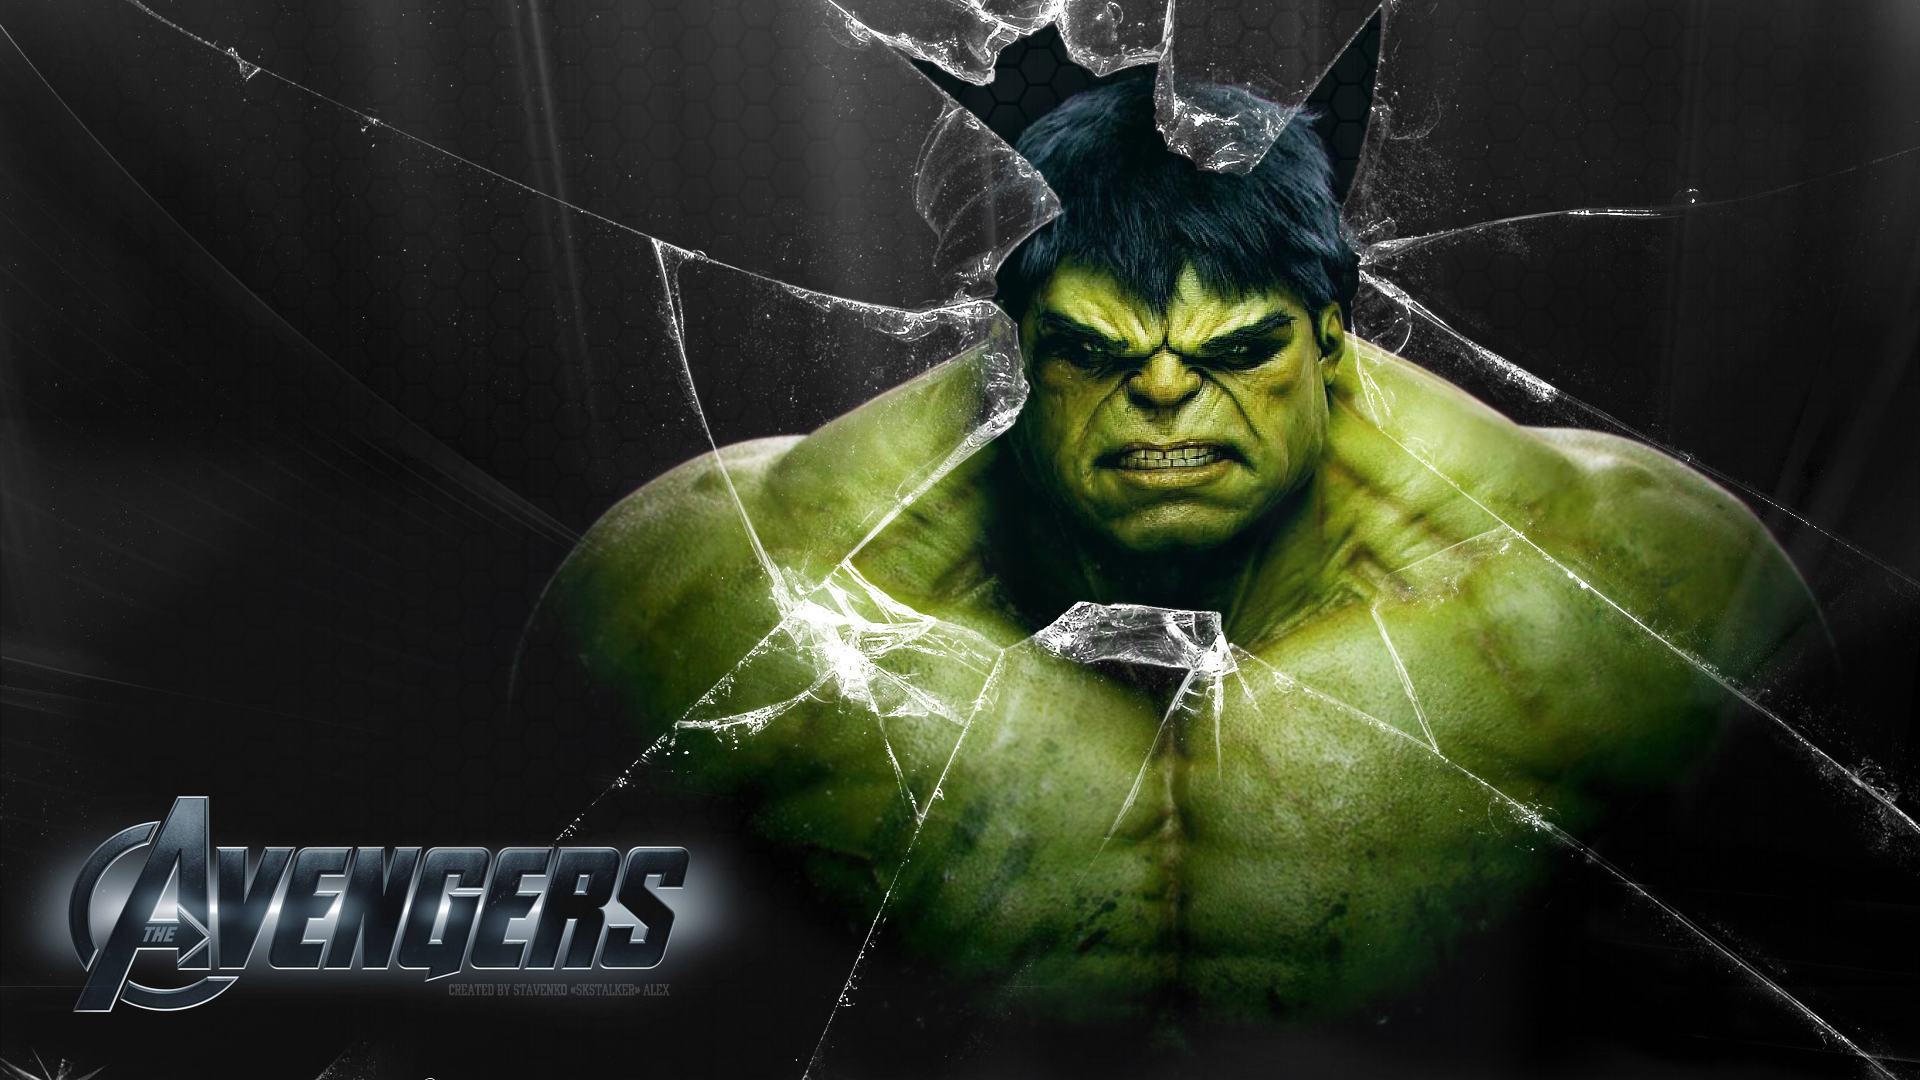 48+] Hulk 1080p Wallpaper - WallpaperSafari